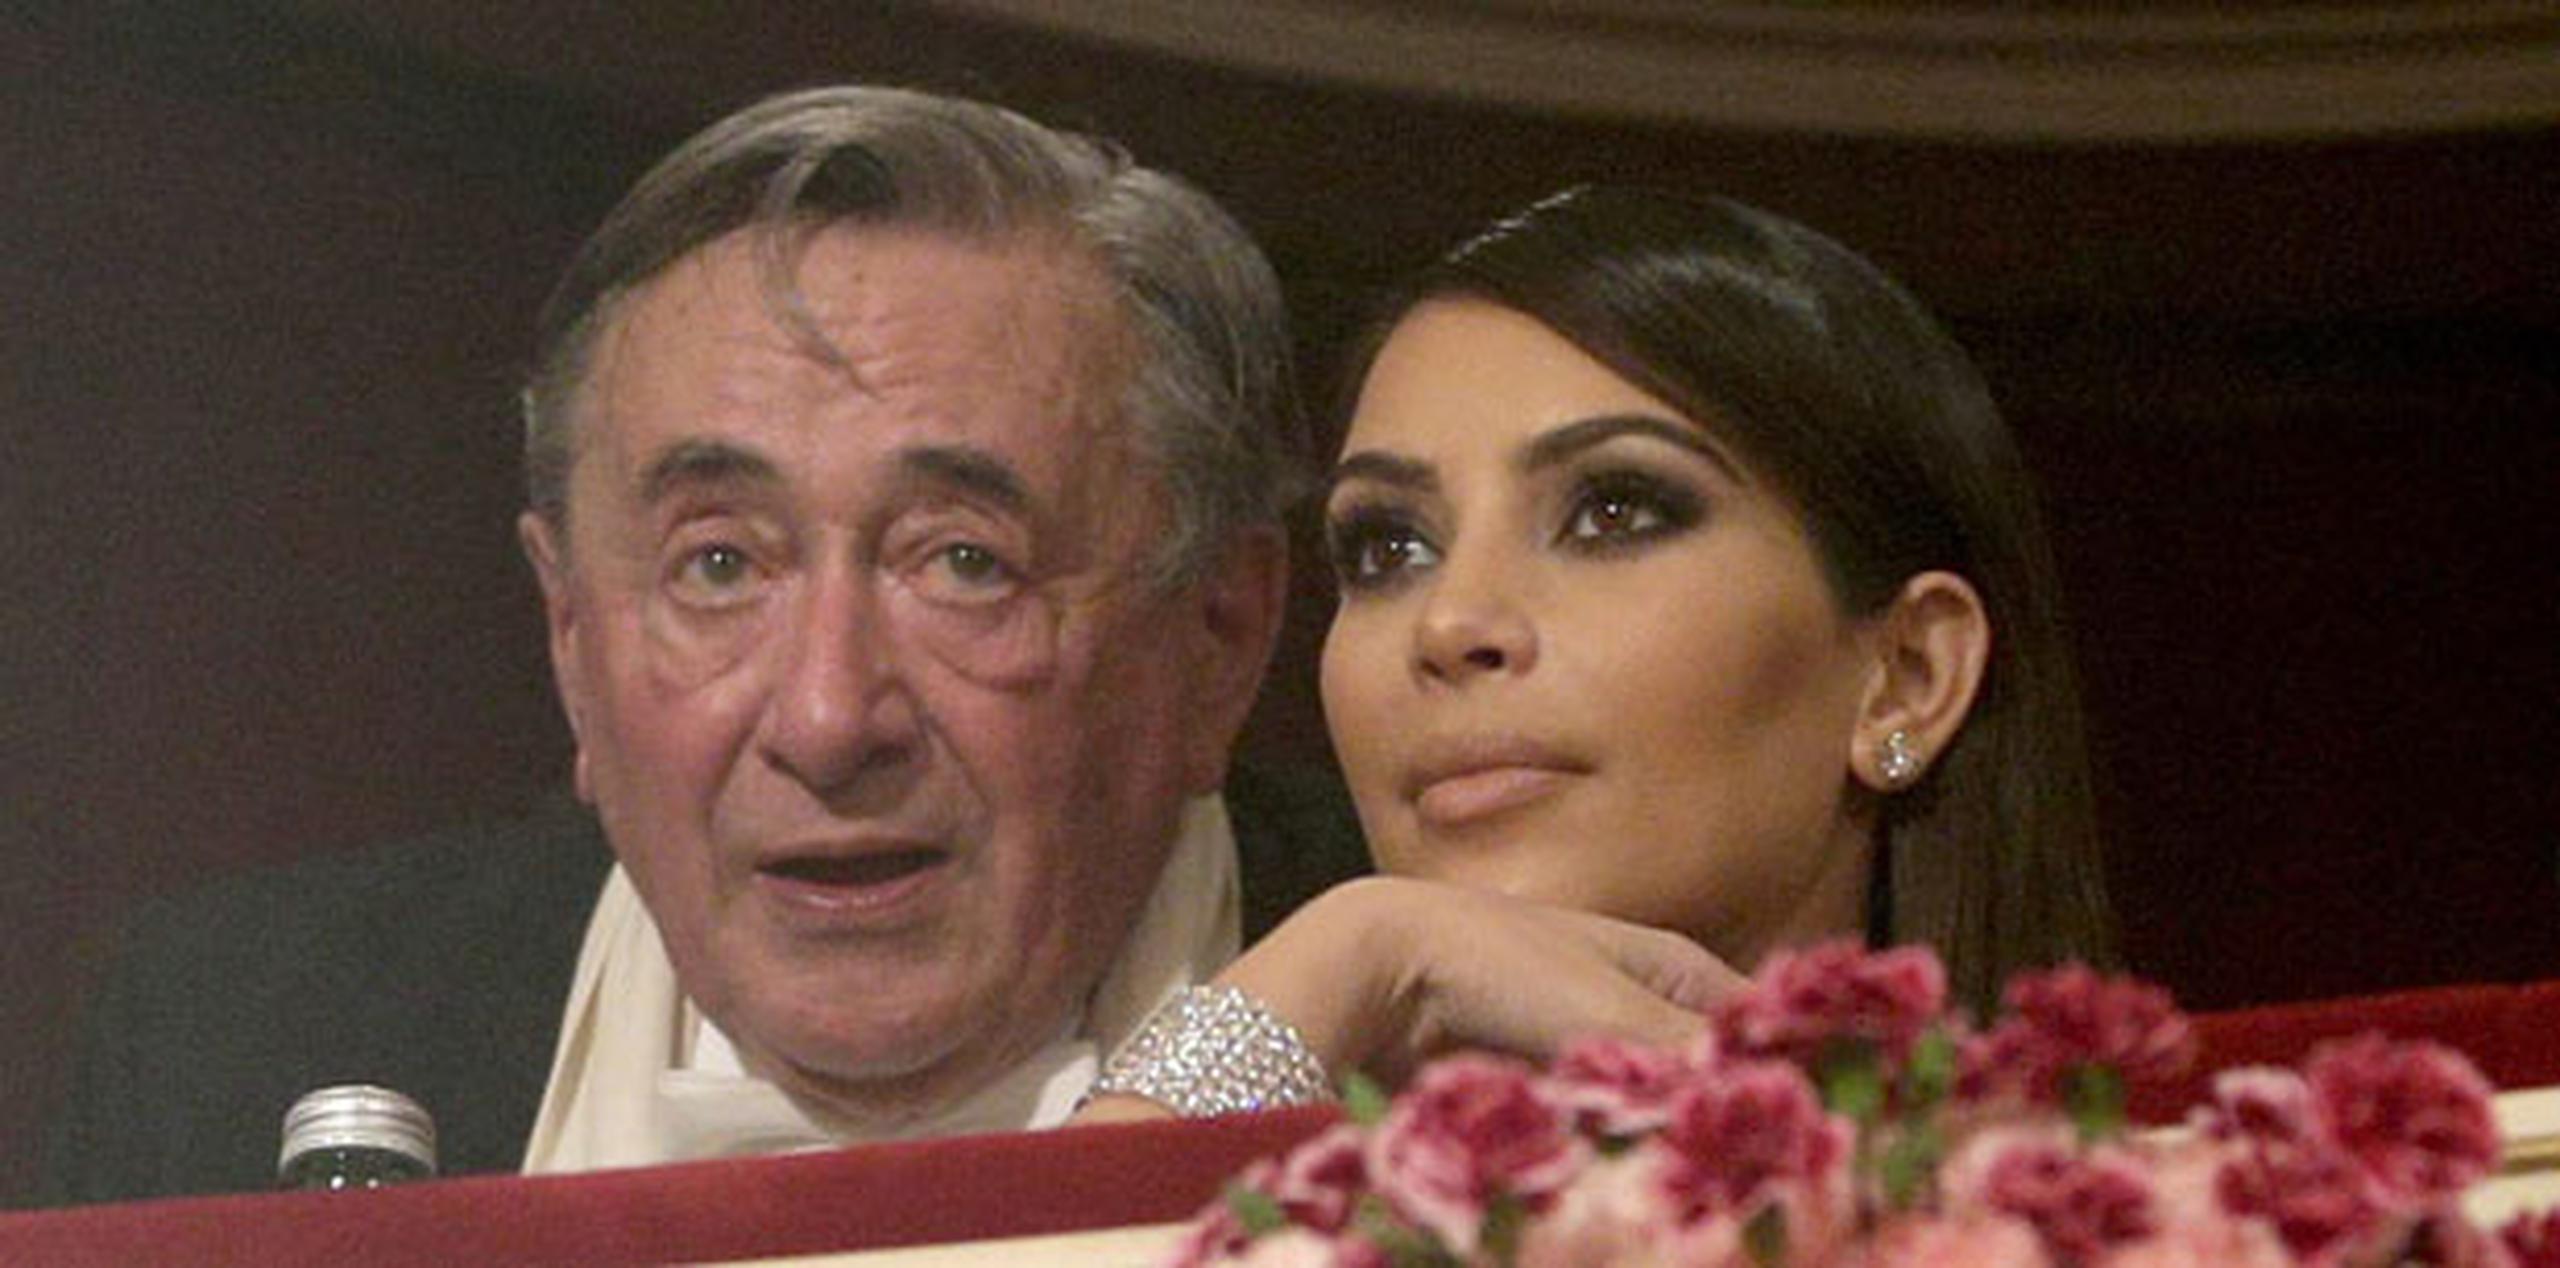 Kardashian asistió al evento como acompañante del millonario austríaco Richard Lugner.(EFE)